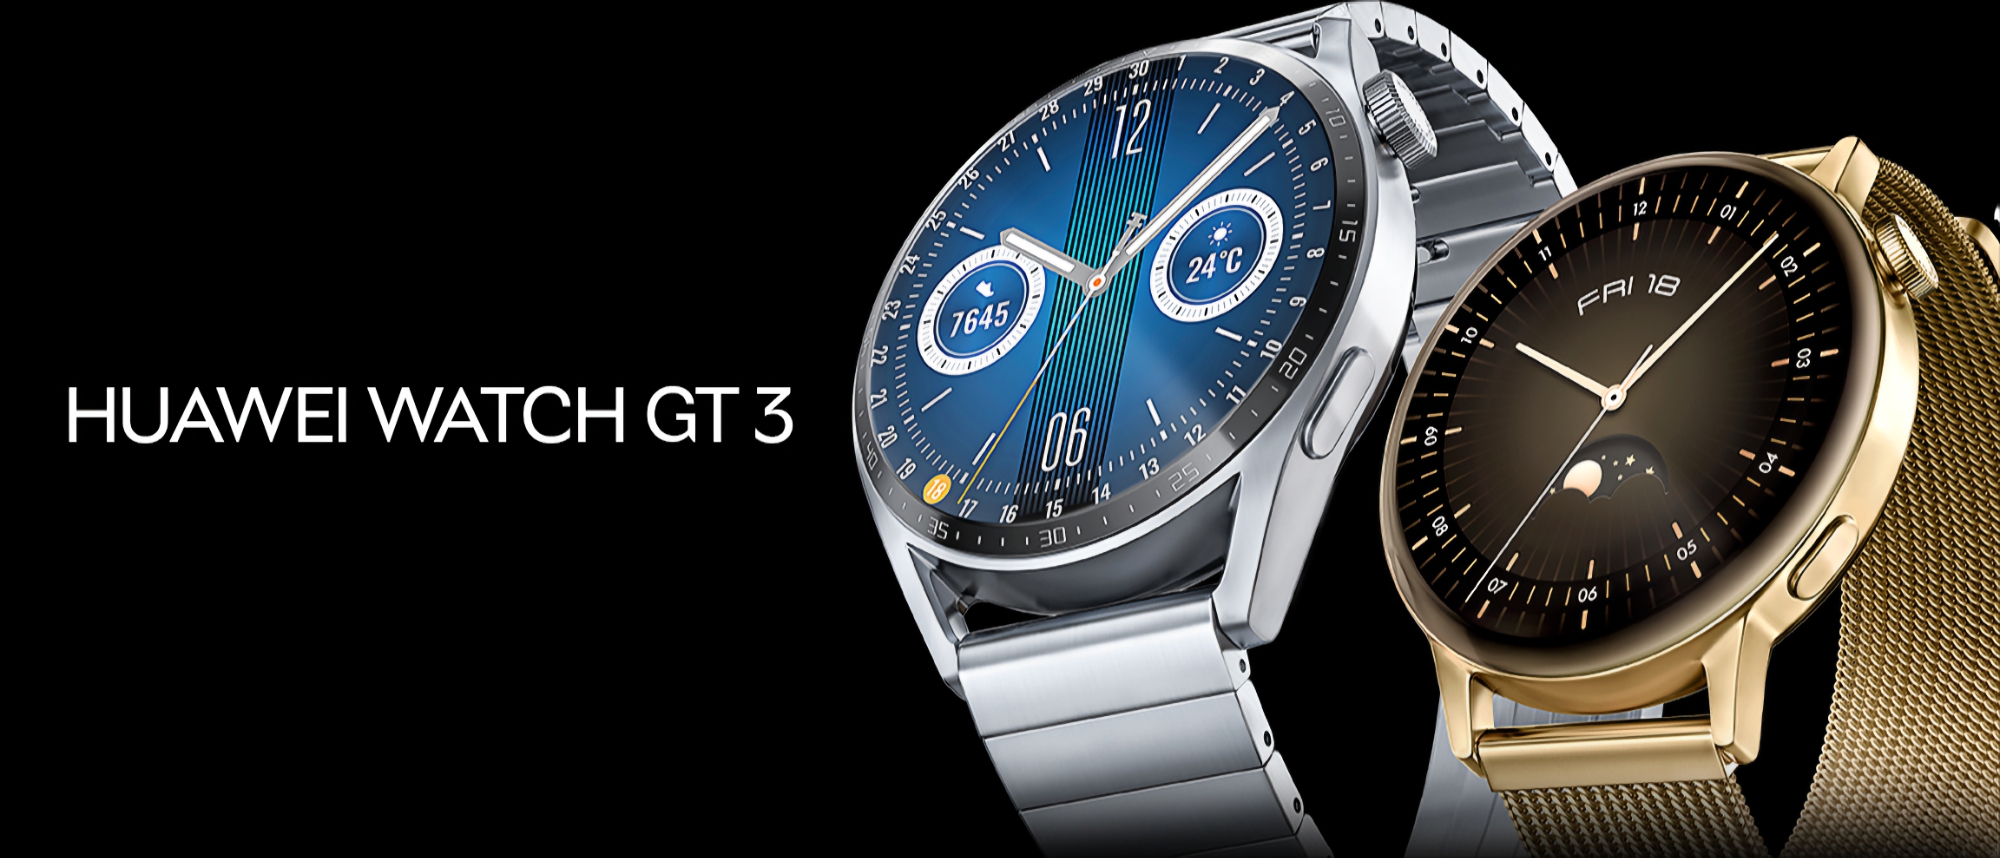 Die Huawei Watch GT 3 Smartwatch erhält ein neues Software-Update